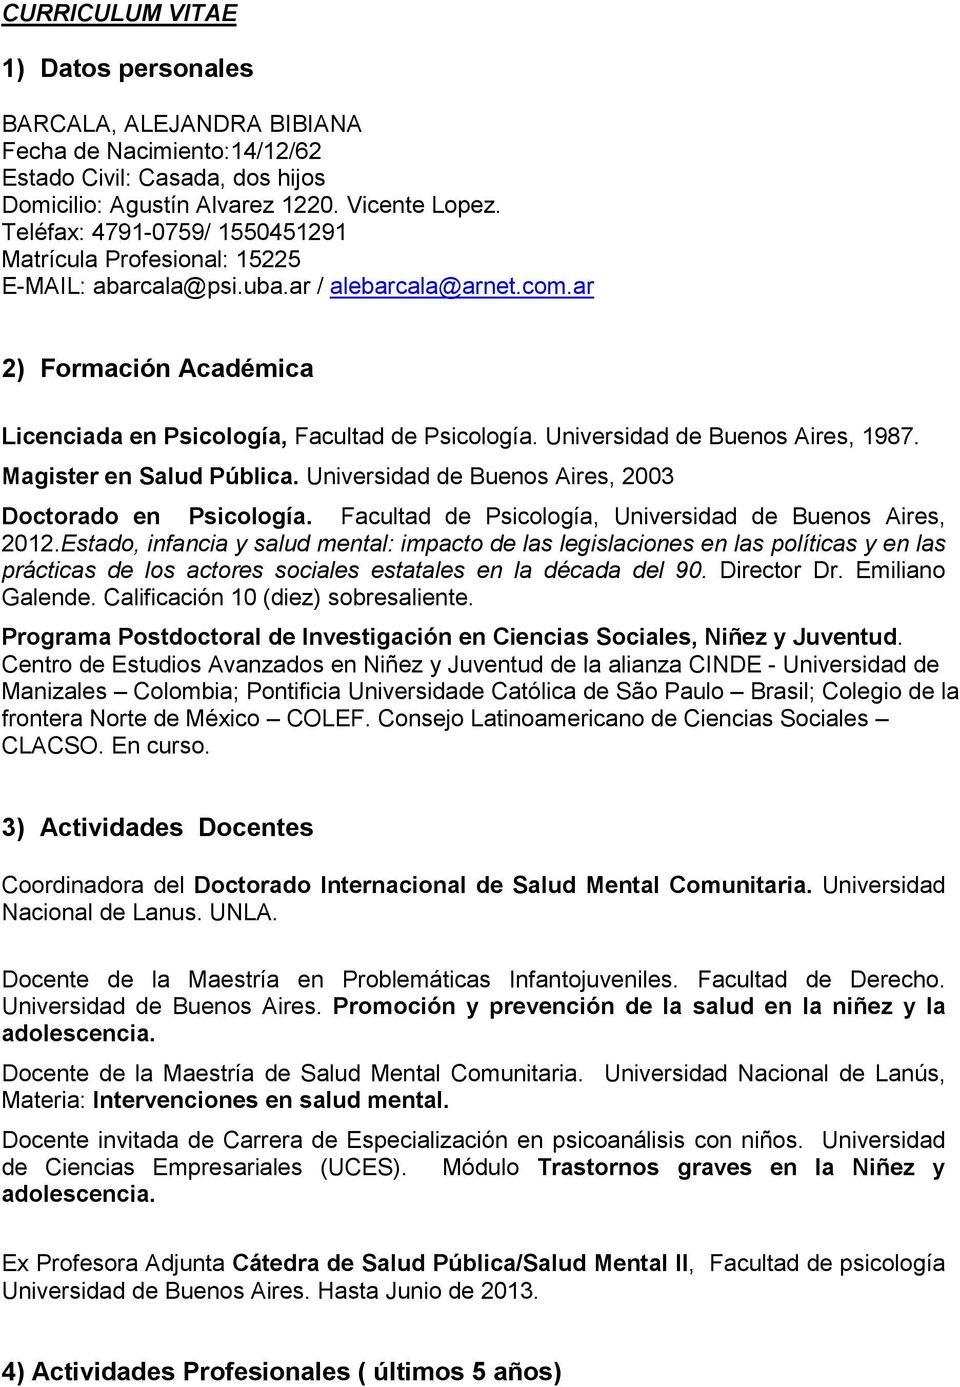 Universidad de Buenos Aires, 1987. Magister en Salud Pública. Universidad de Buenos Aires, 2003 Doctorado en Psicología. Facultad de Psicología, Universidad de Buenos Aires, 2012.